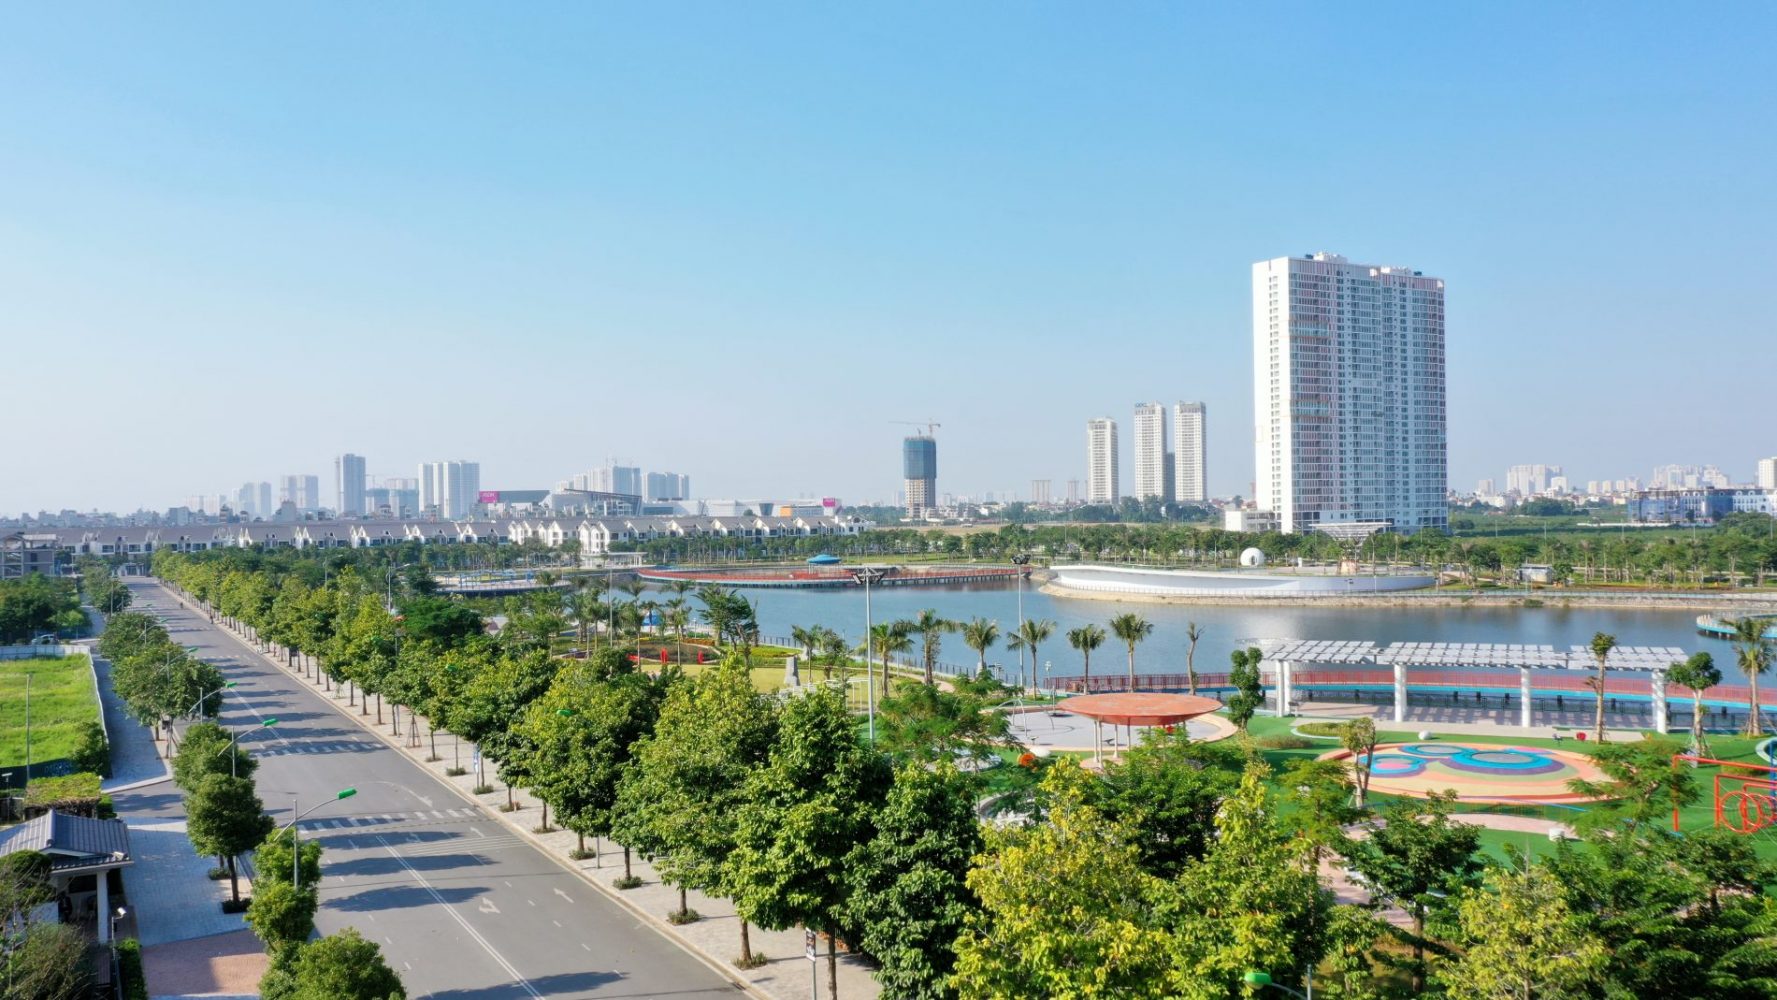 Khu đô thị Dương Nội: Cư dân hưởng lợi nhờ mật độ xây dựng thấp - Ảnh 2.